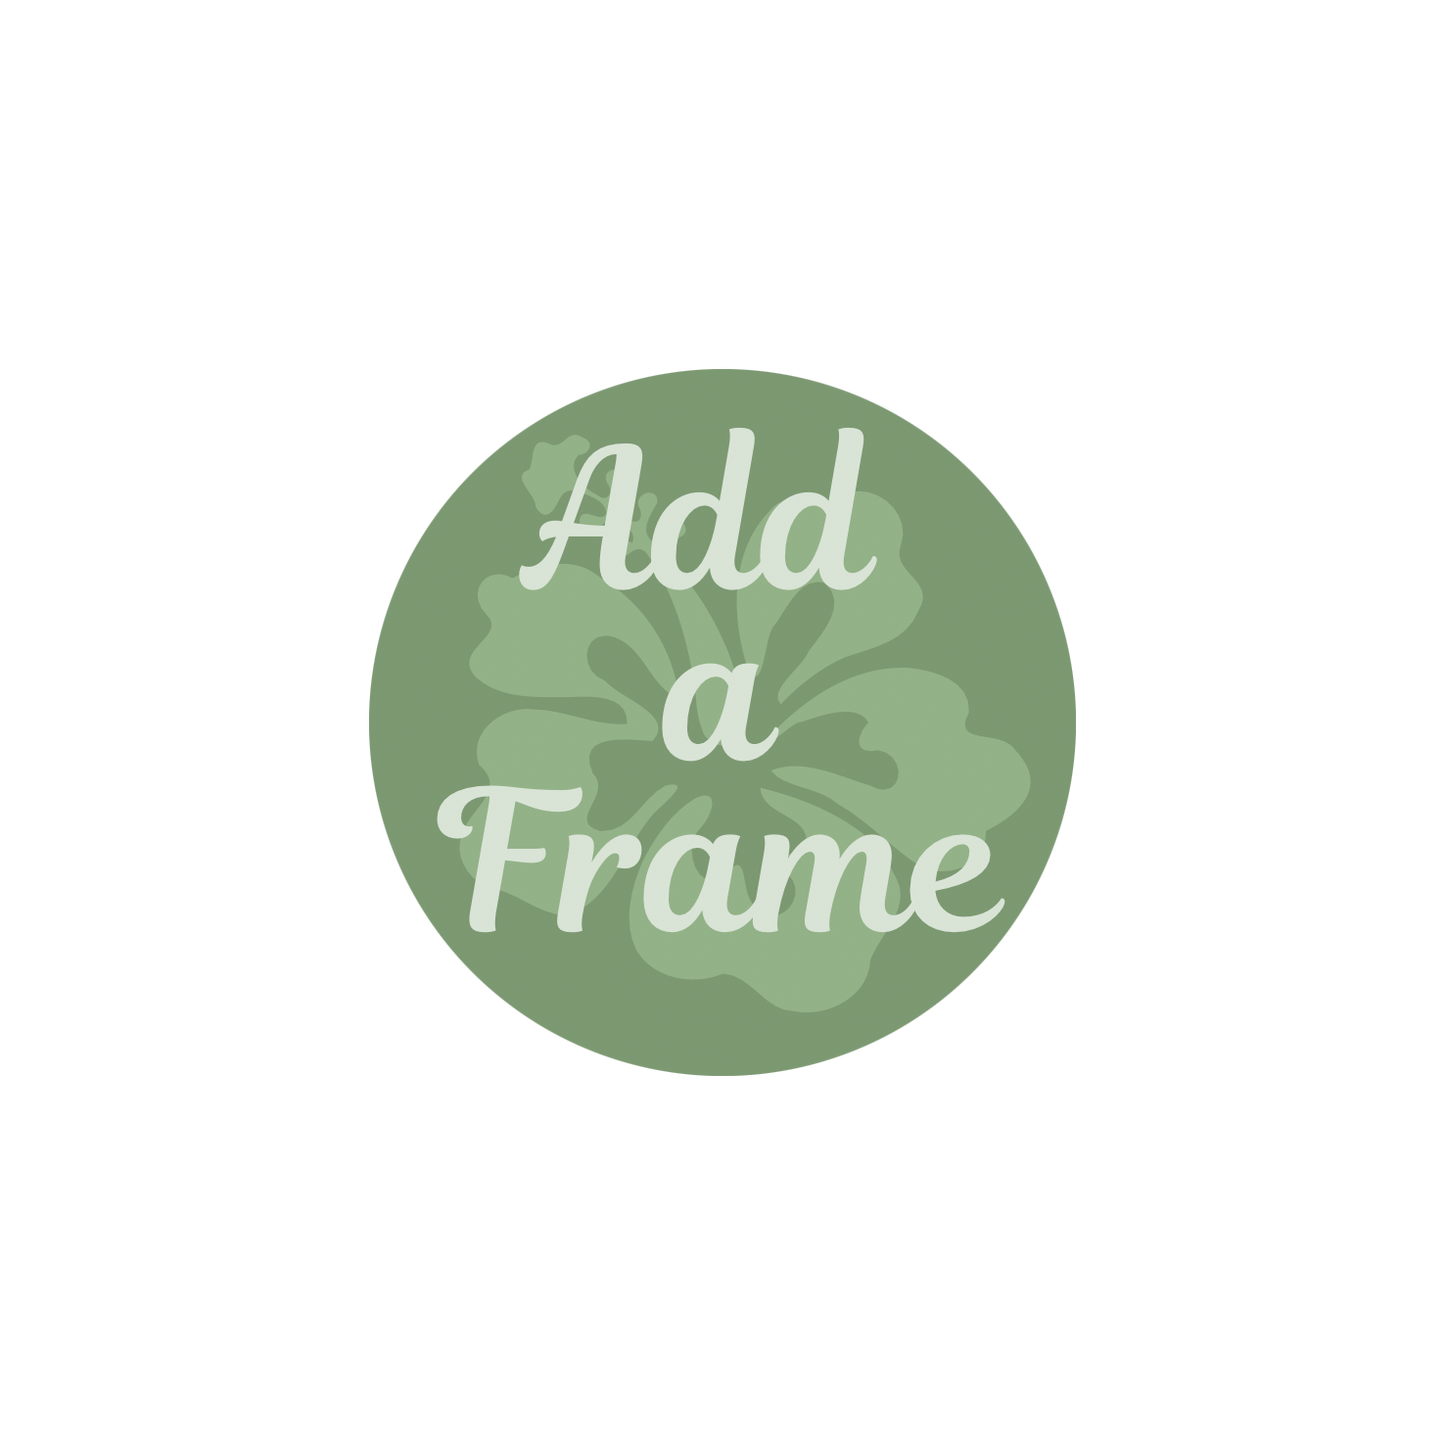 Add a Frame